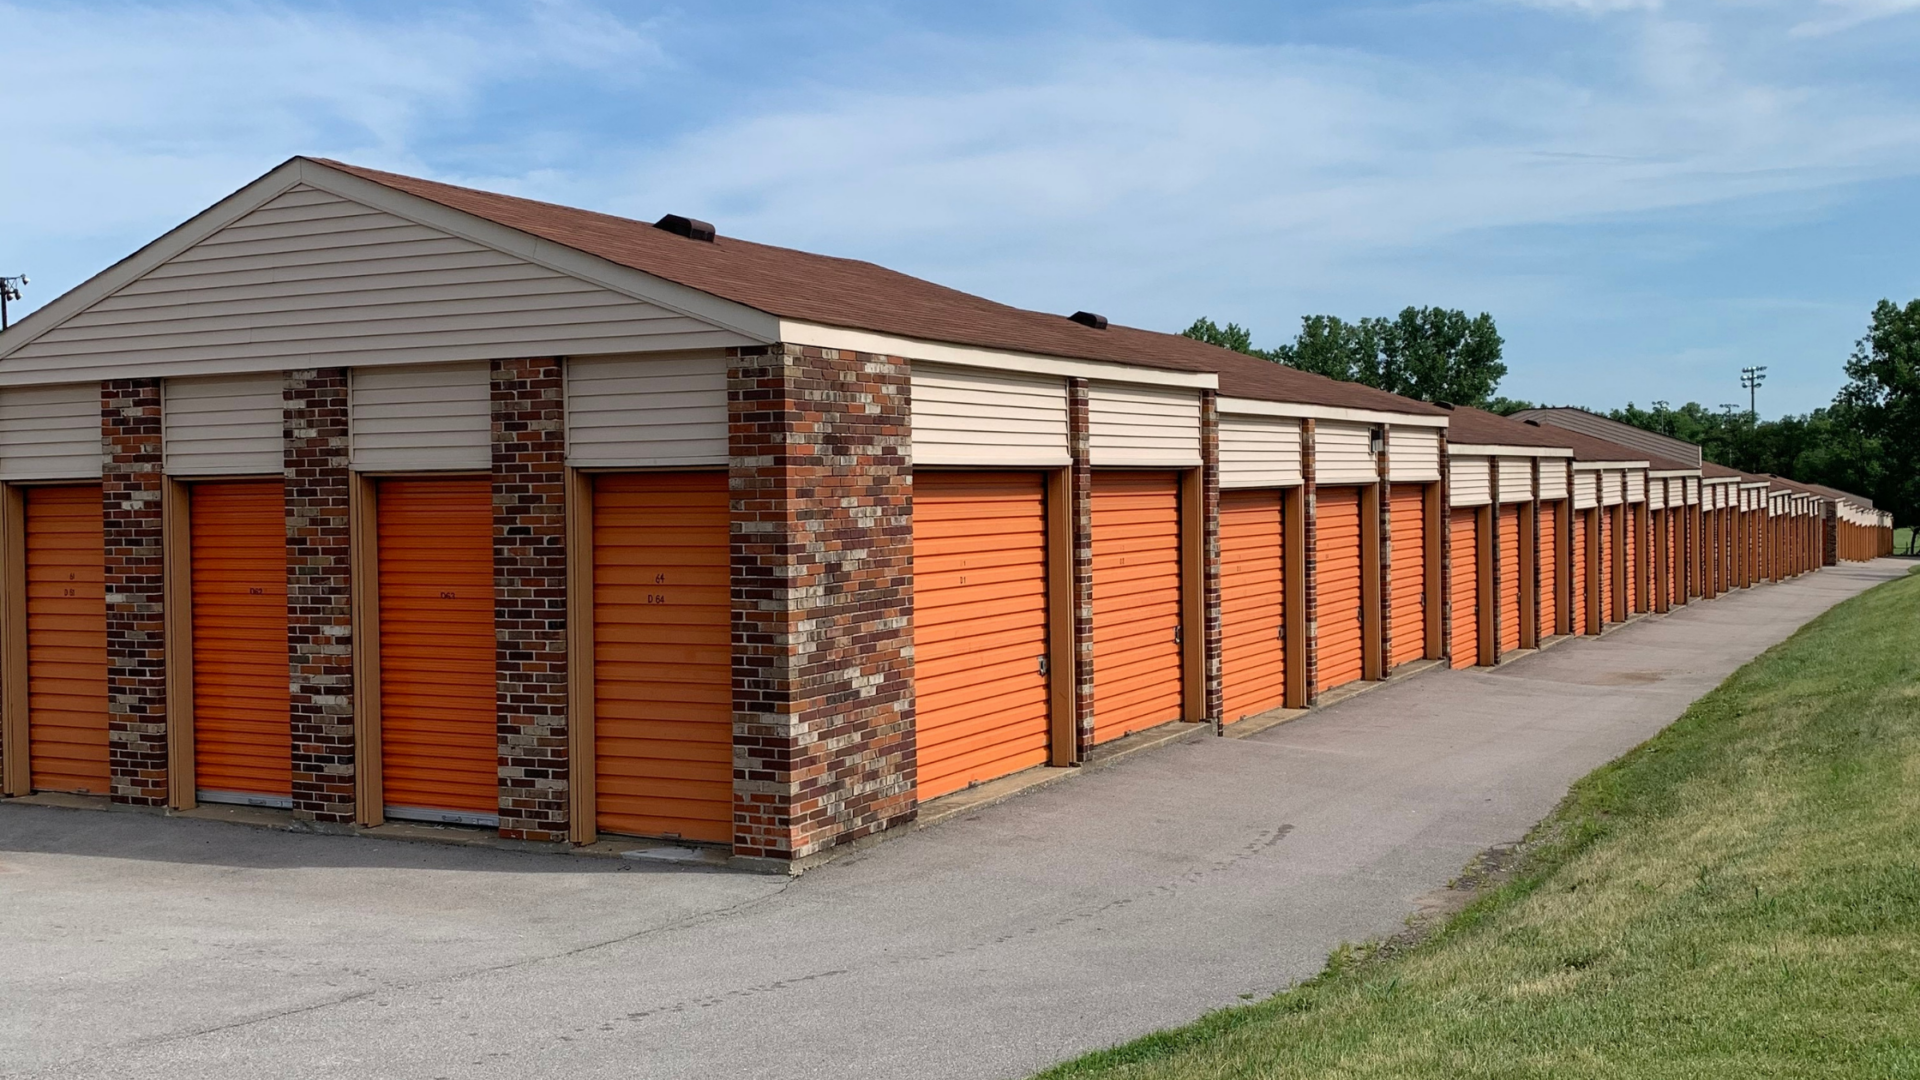 Outdoor storage units with garage doors.